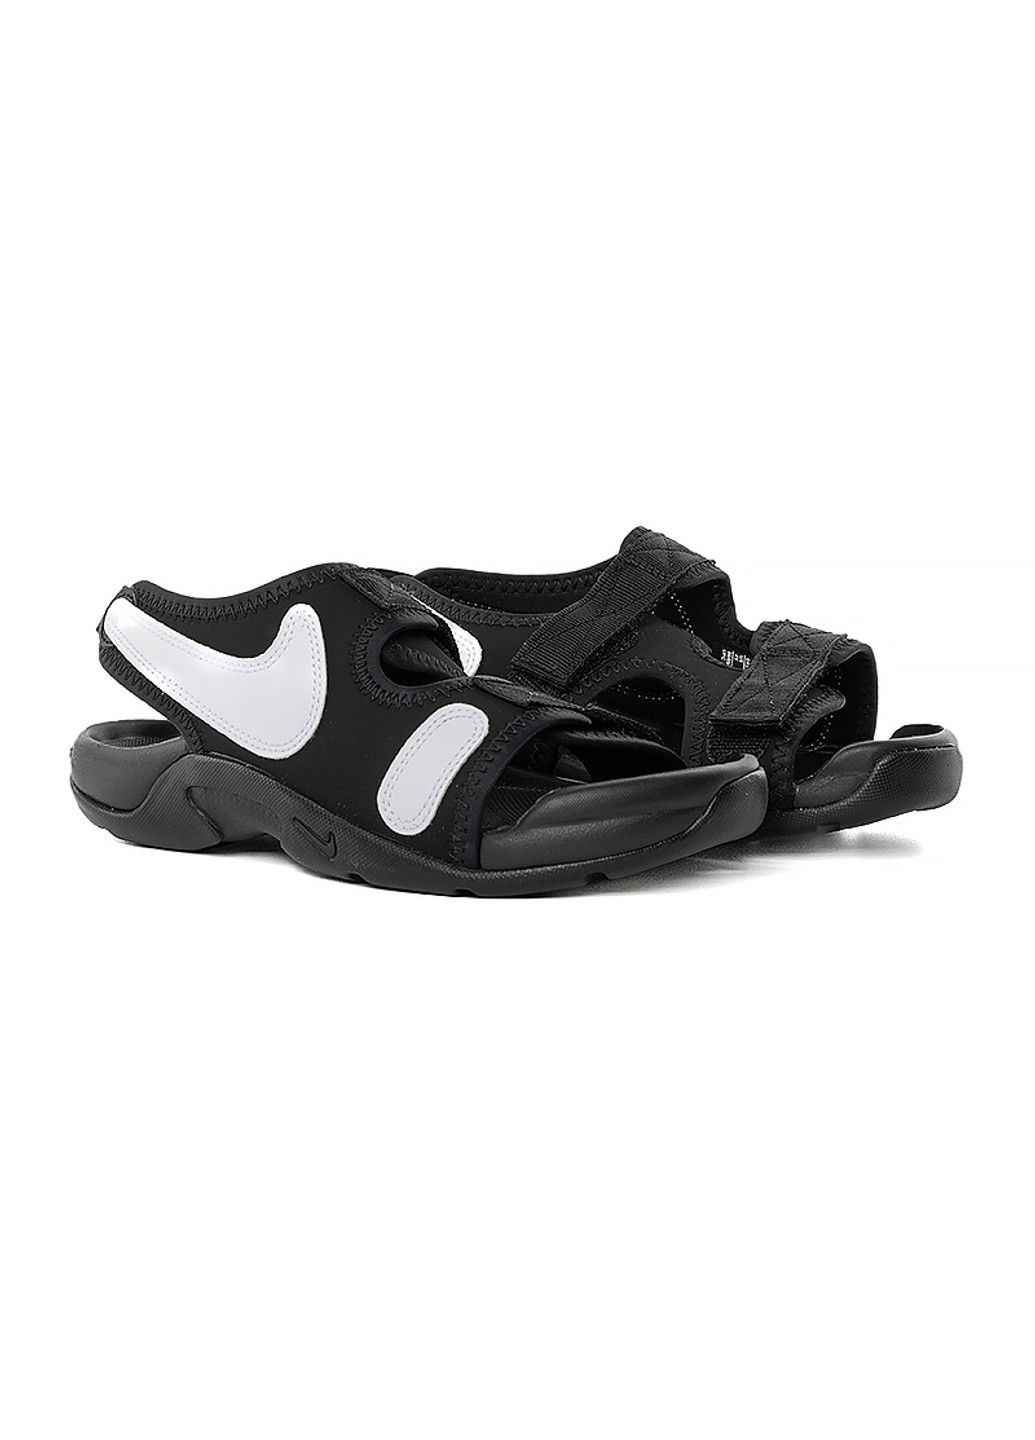 Черные сандали sunray adjust 6 (gs) Nike